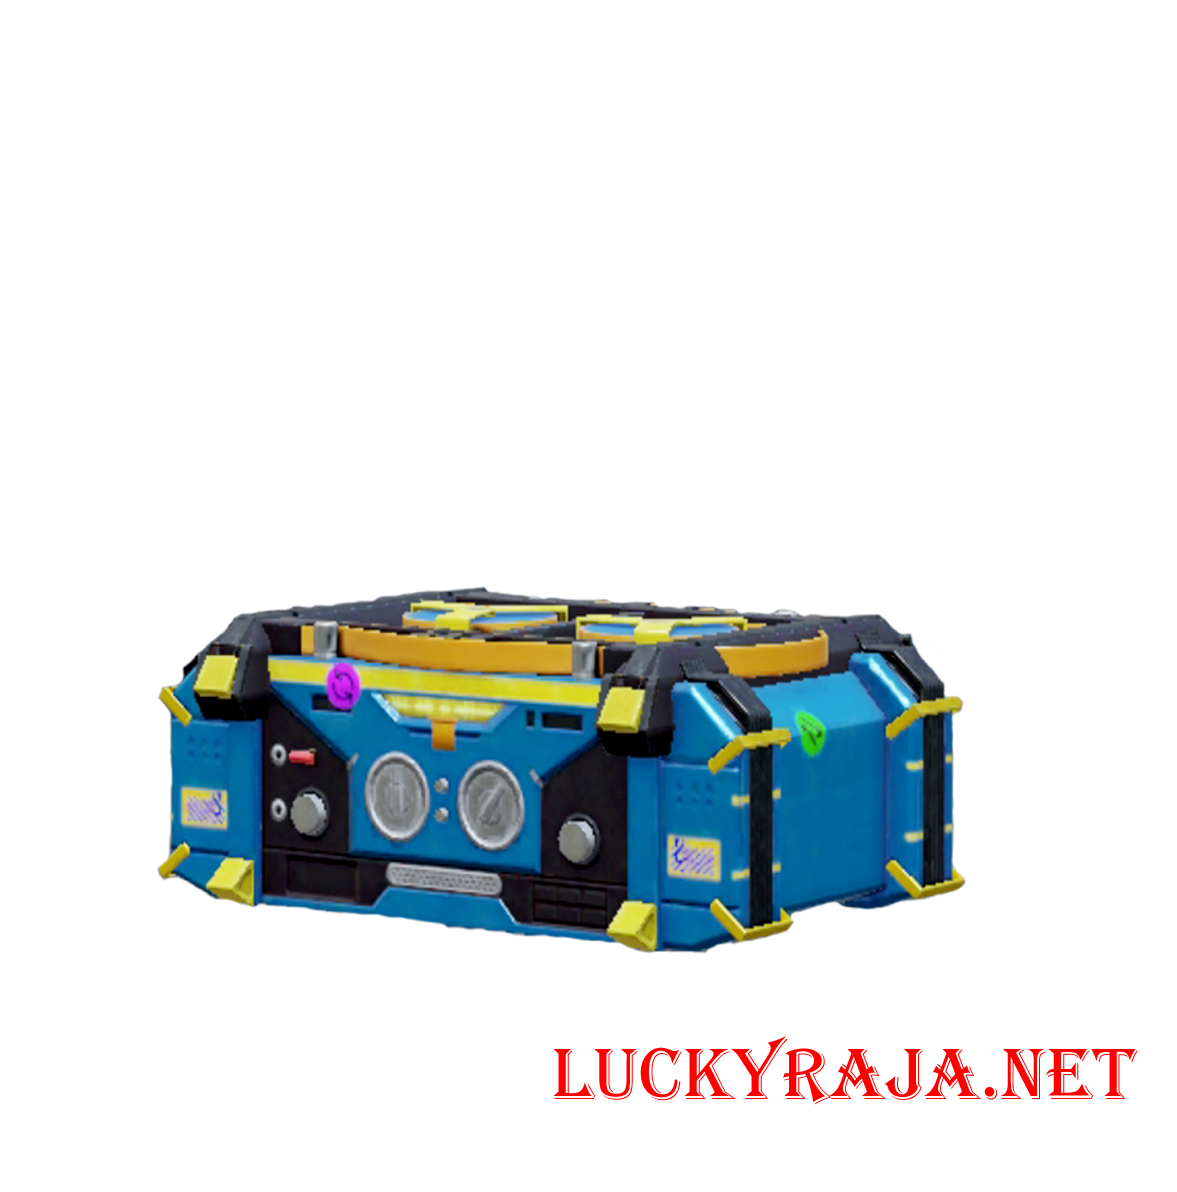 Circle of Life -M24 loot crate pubg mobile,Circle of Life -M24 loot crate,loot crate